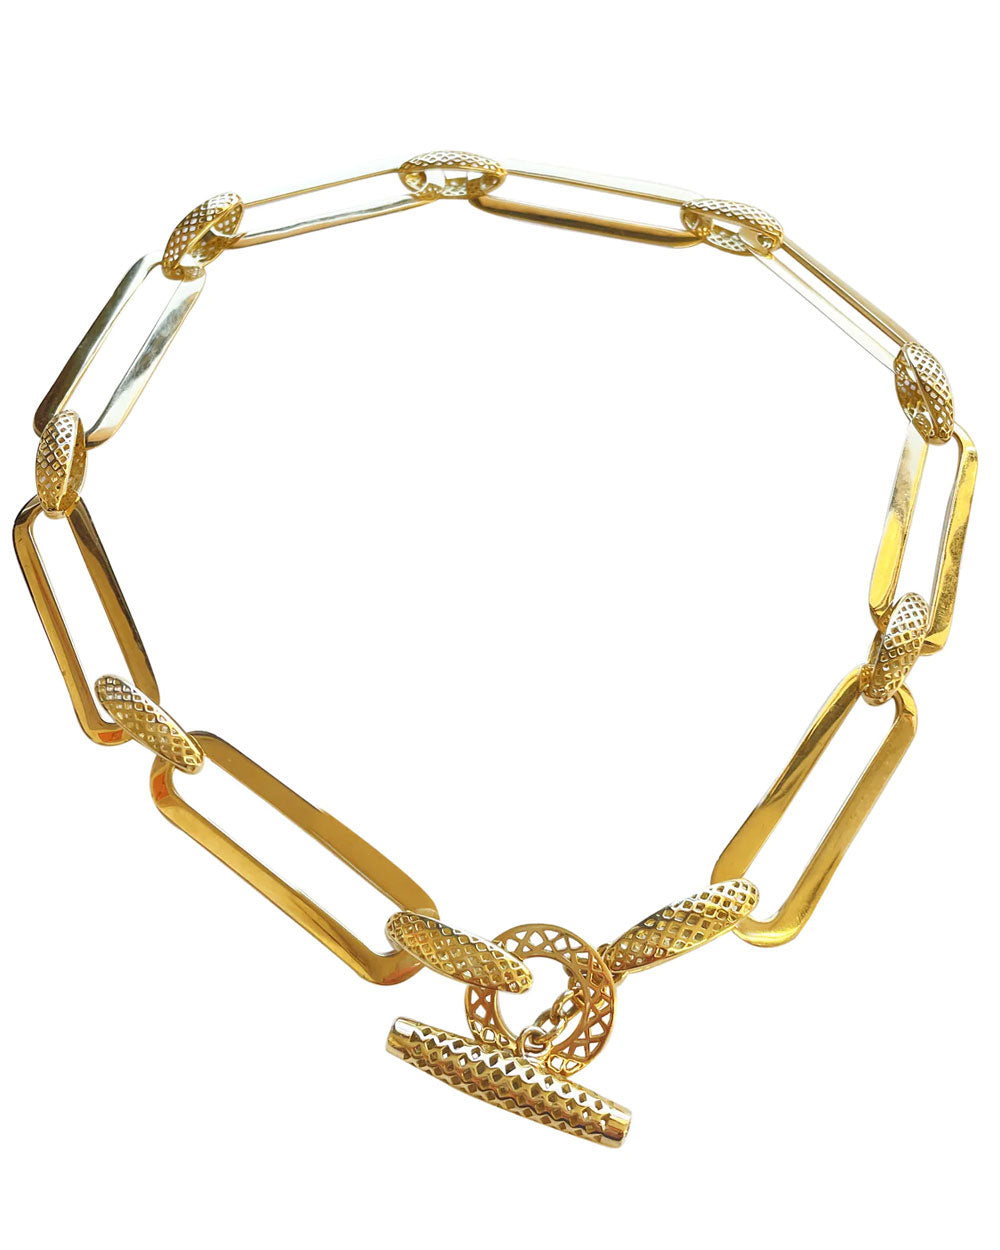 Oblong Link and Crownwork Necklace